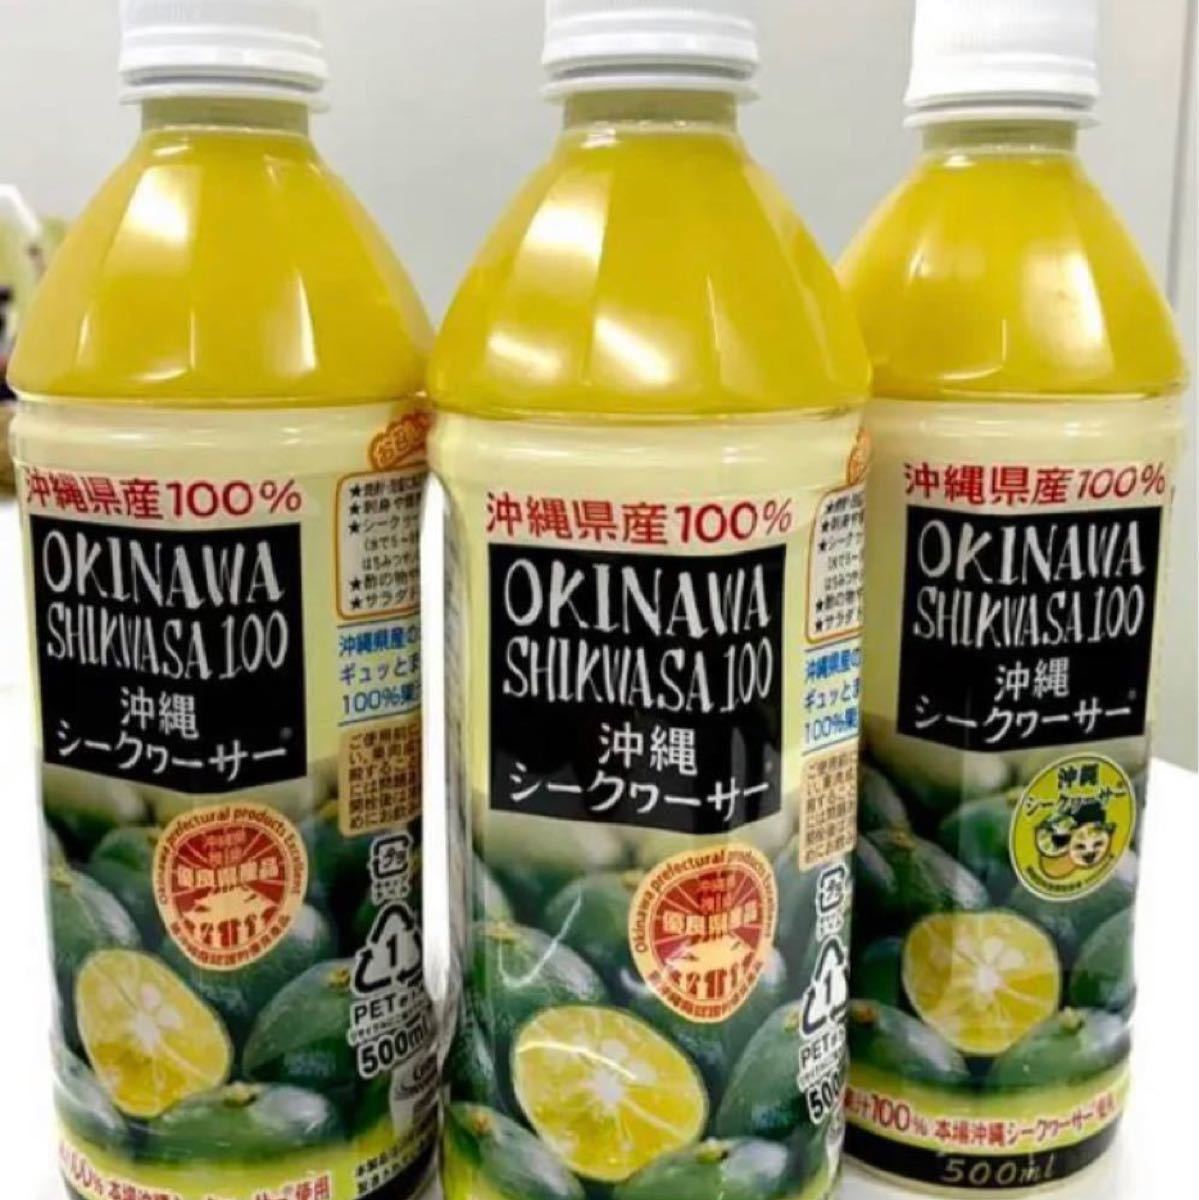 沖縄産シークワーサーを100%果汁(500ml)の3本セット